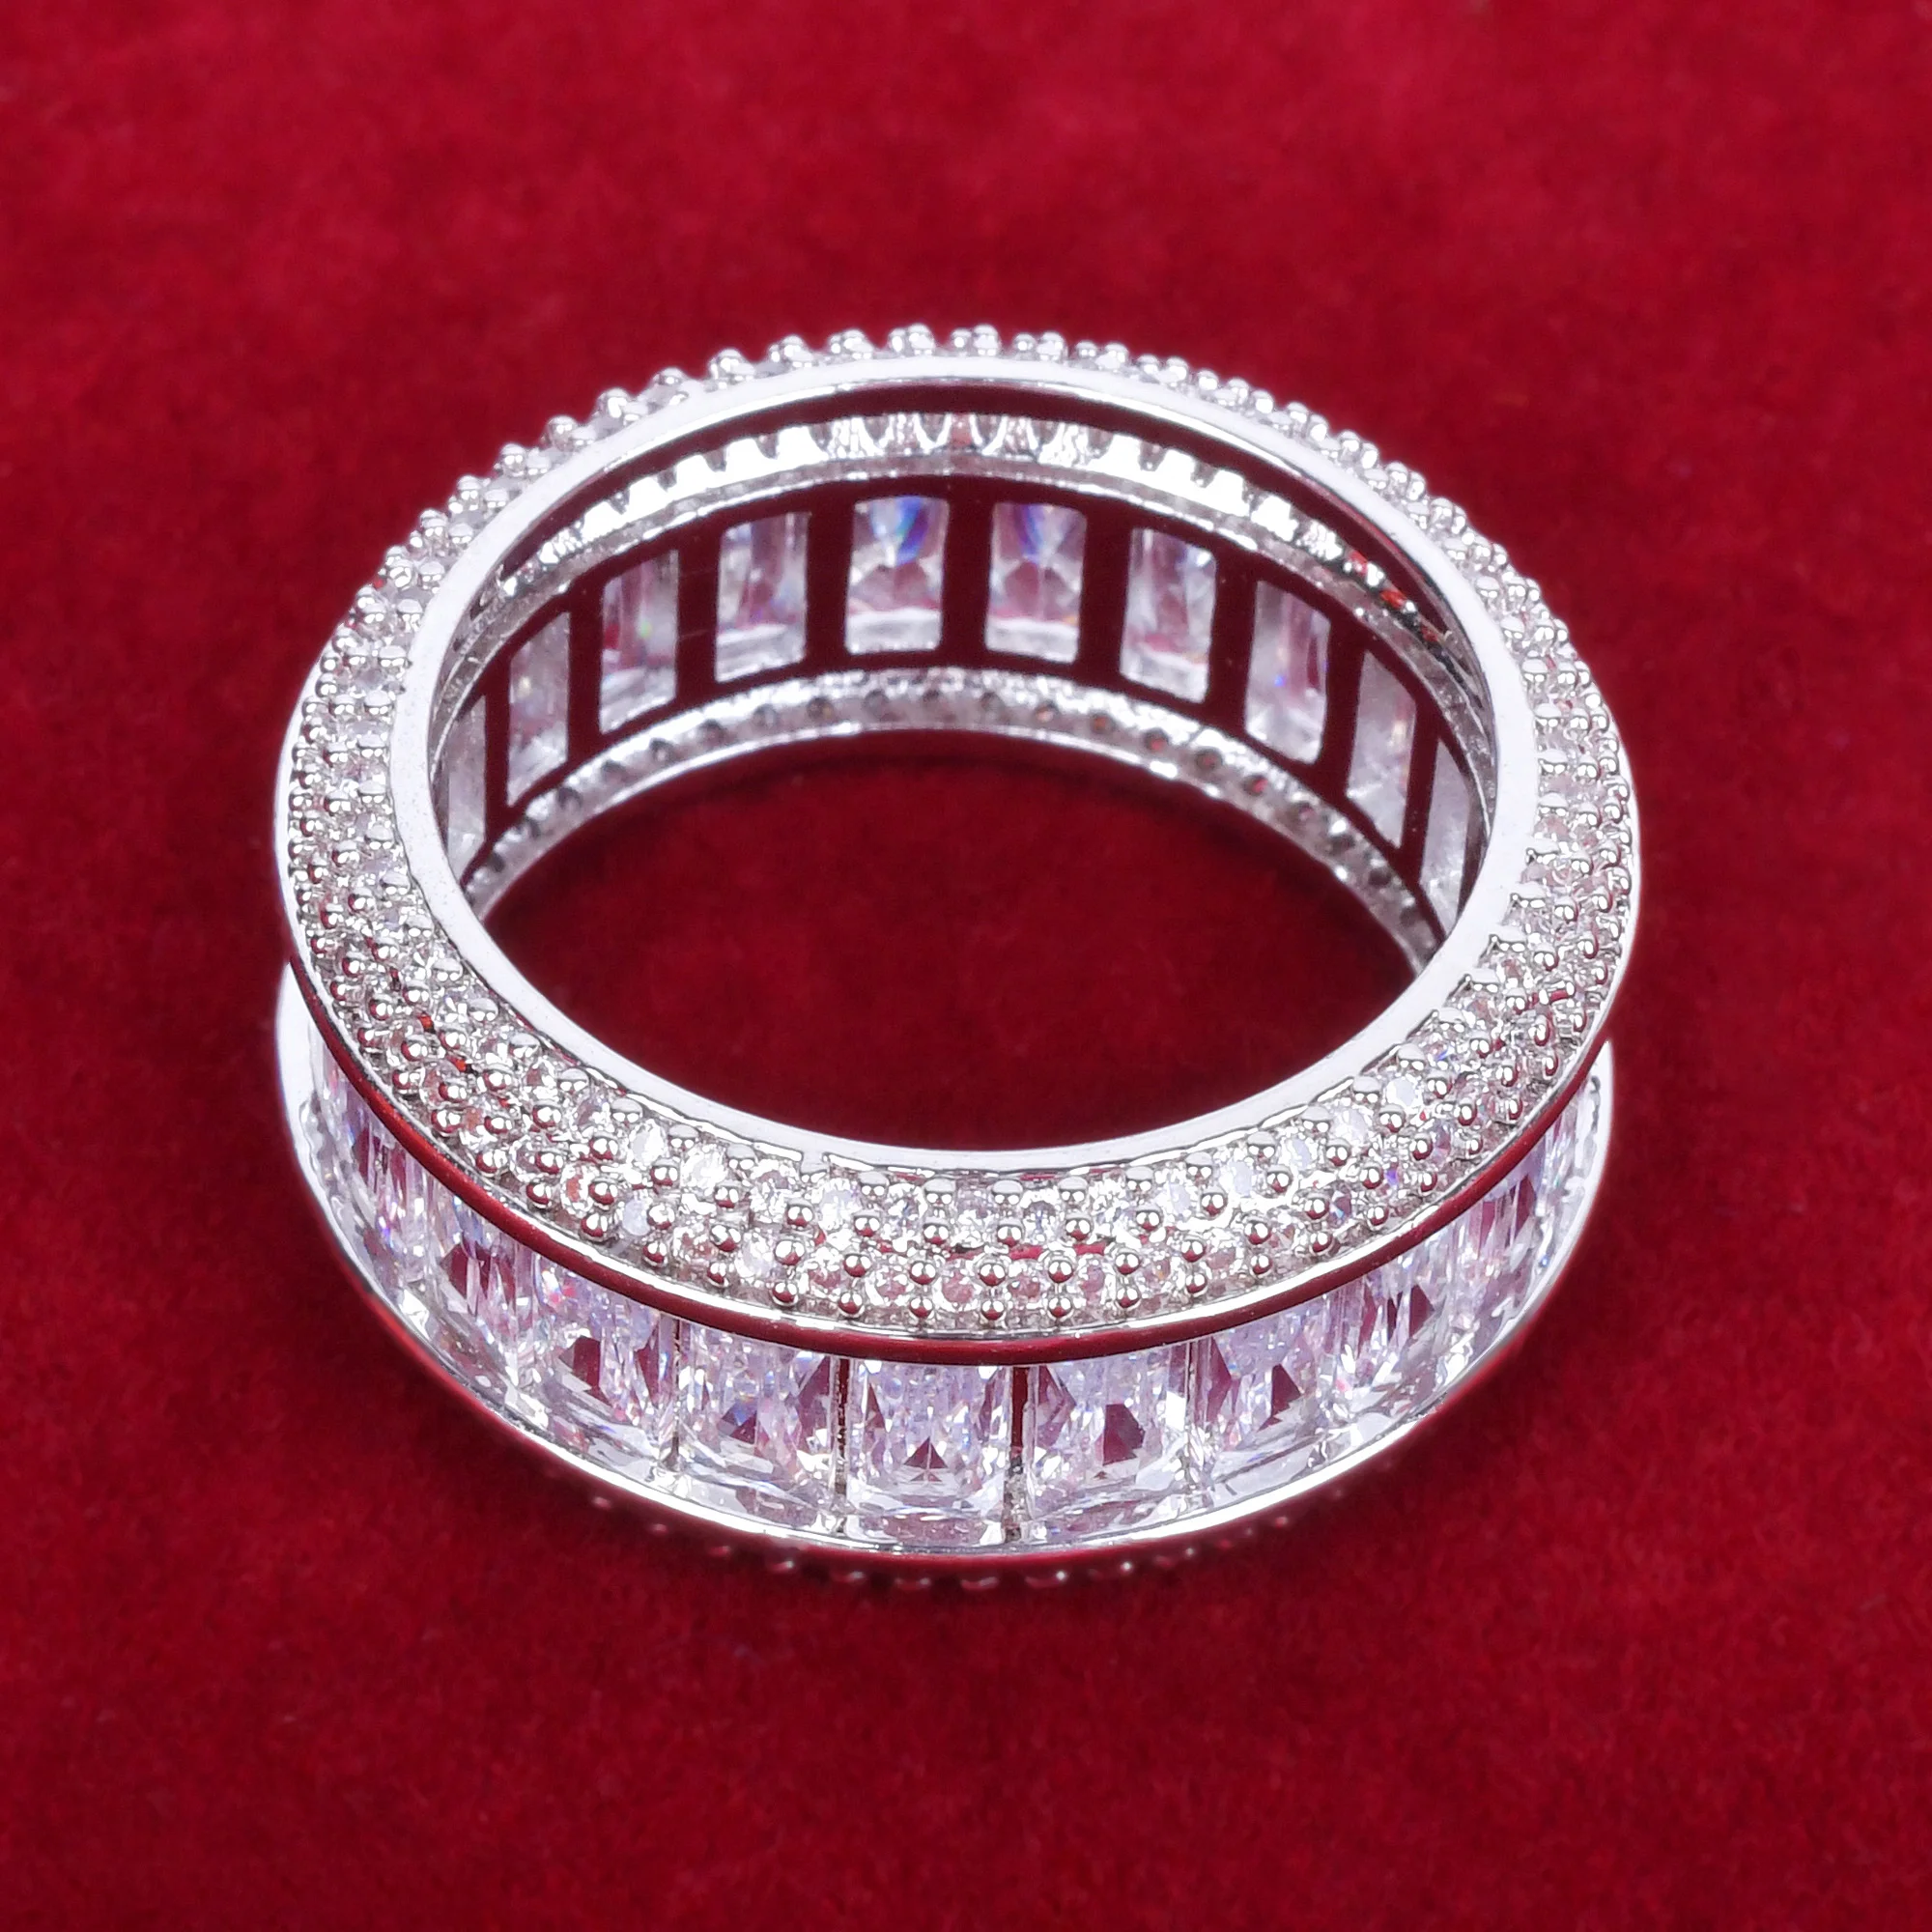 Блестящее кольцо для мужчин с багетным цирконом "Bling Baguette", медный сплав 18К, золотого цвета, украшение для вечеринок, модное хип-хоп / рок украшение на пальце.